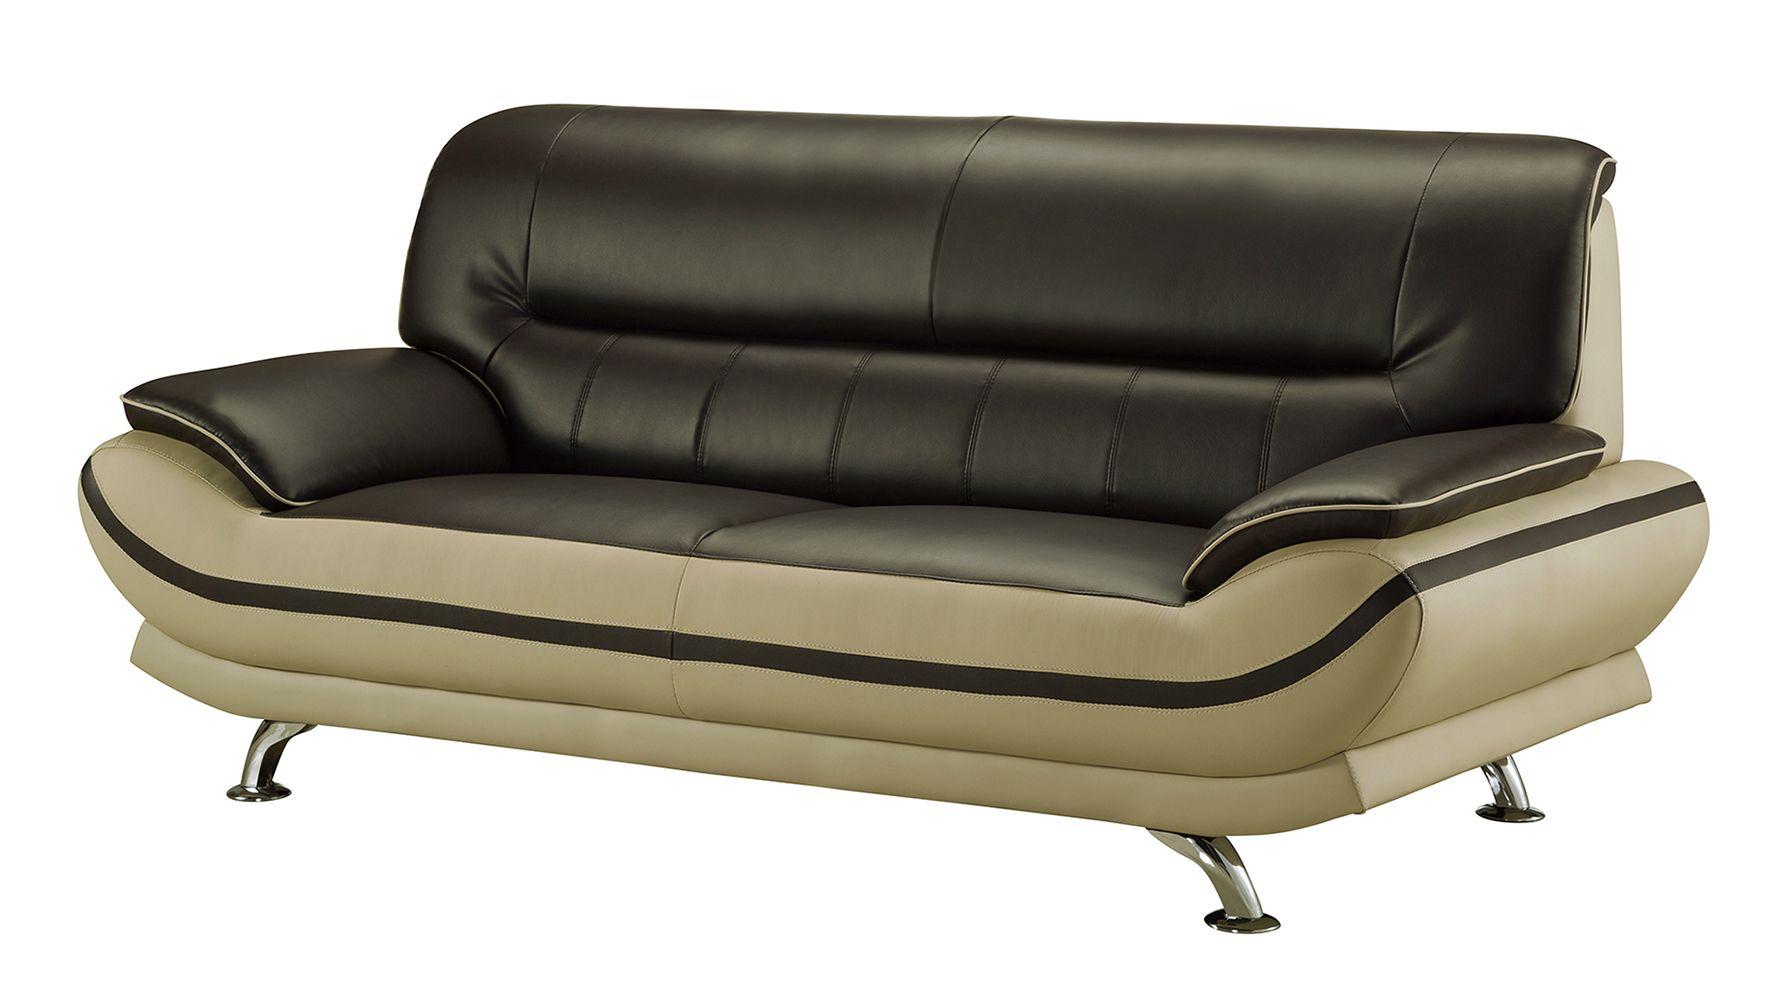 

    
American Eagle Furniture AE709-MA.LG Sofa Set Light Gray/Mahogany AE709-MA.LG-3PC
